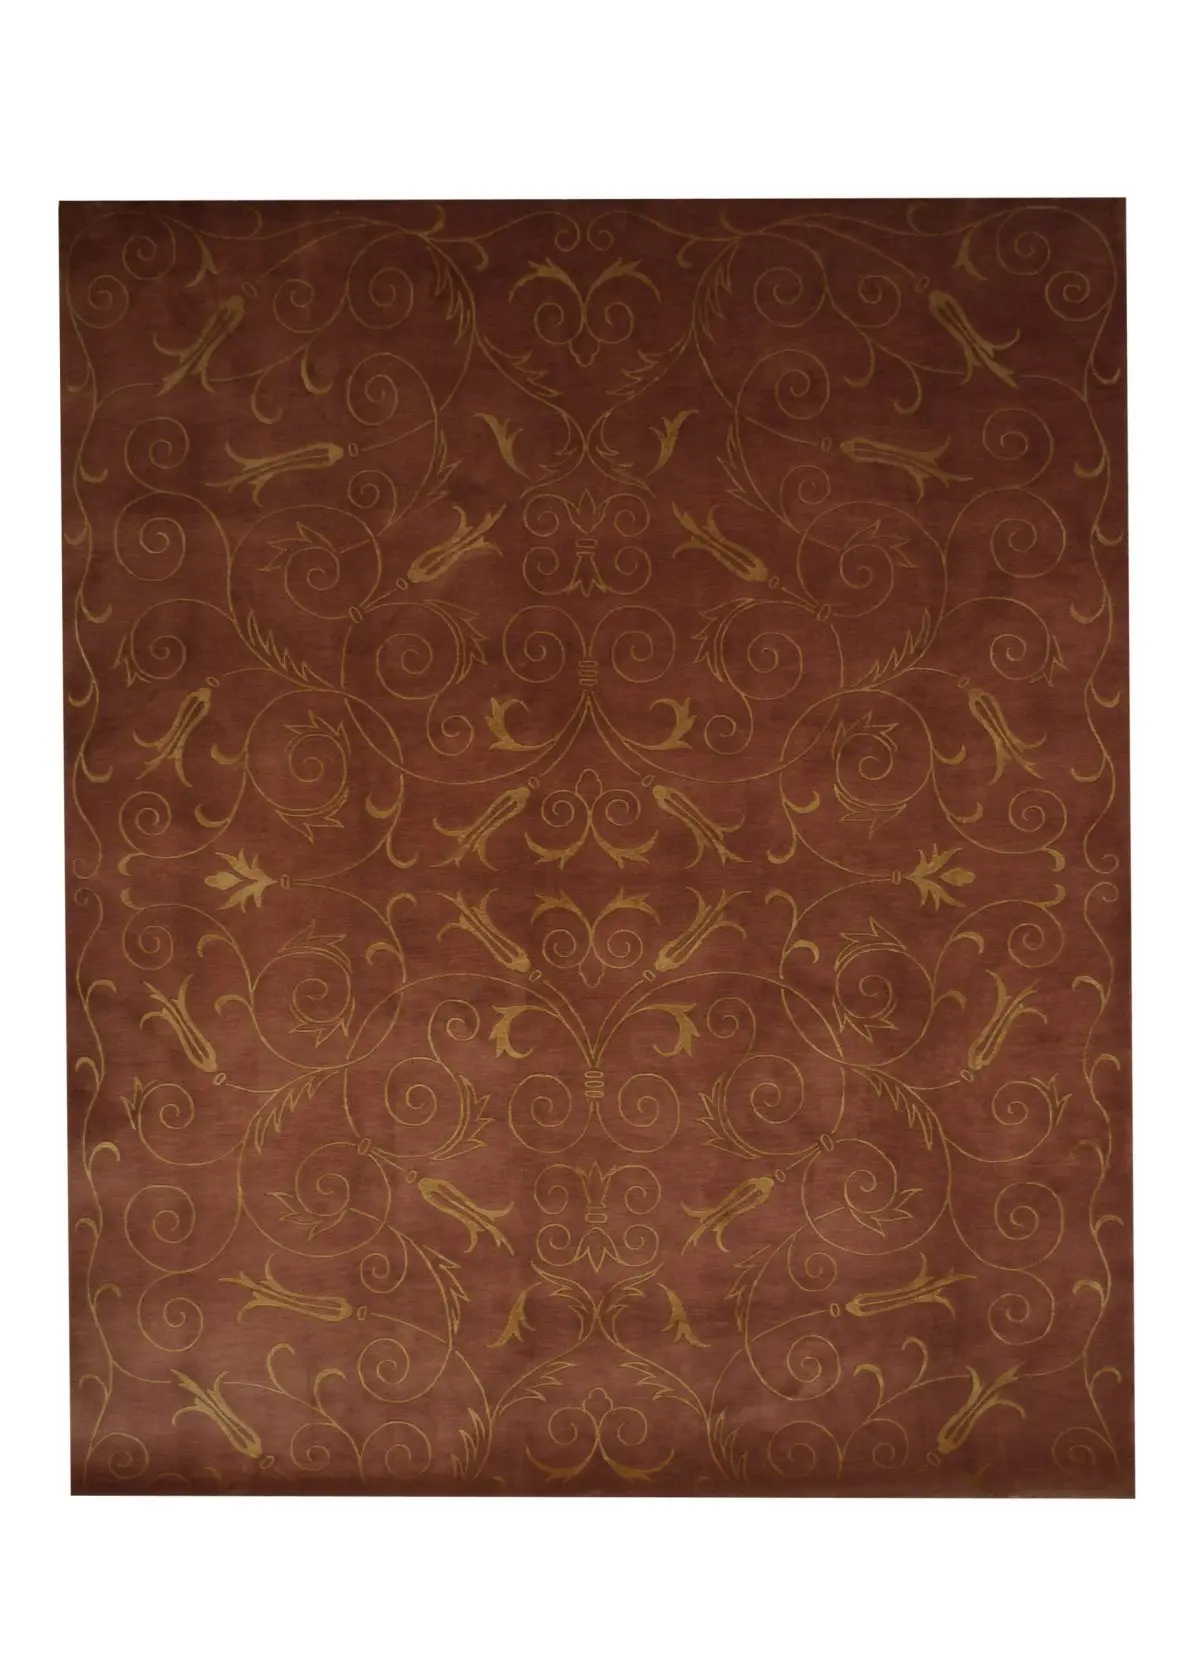 Tibetan 8' x 10' Handmade Area Rug - Shabahang Royal Carpet